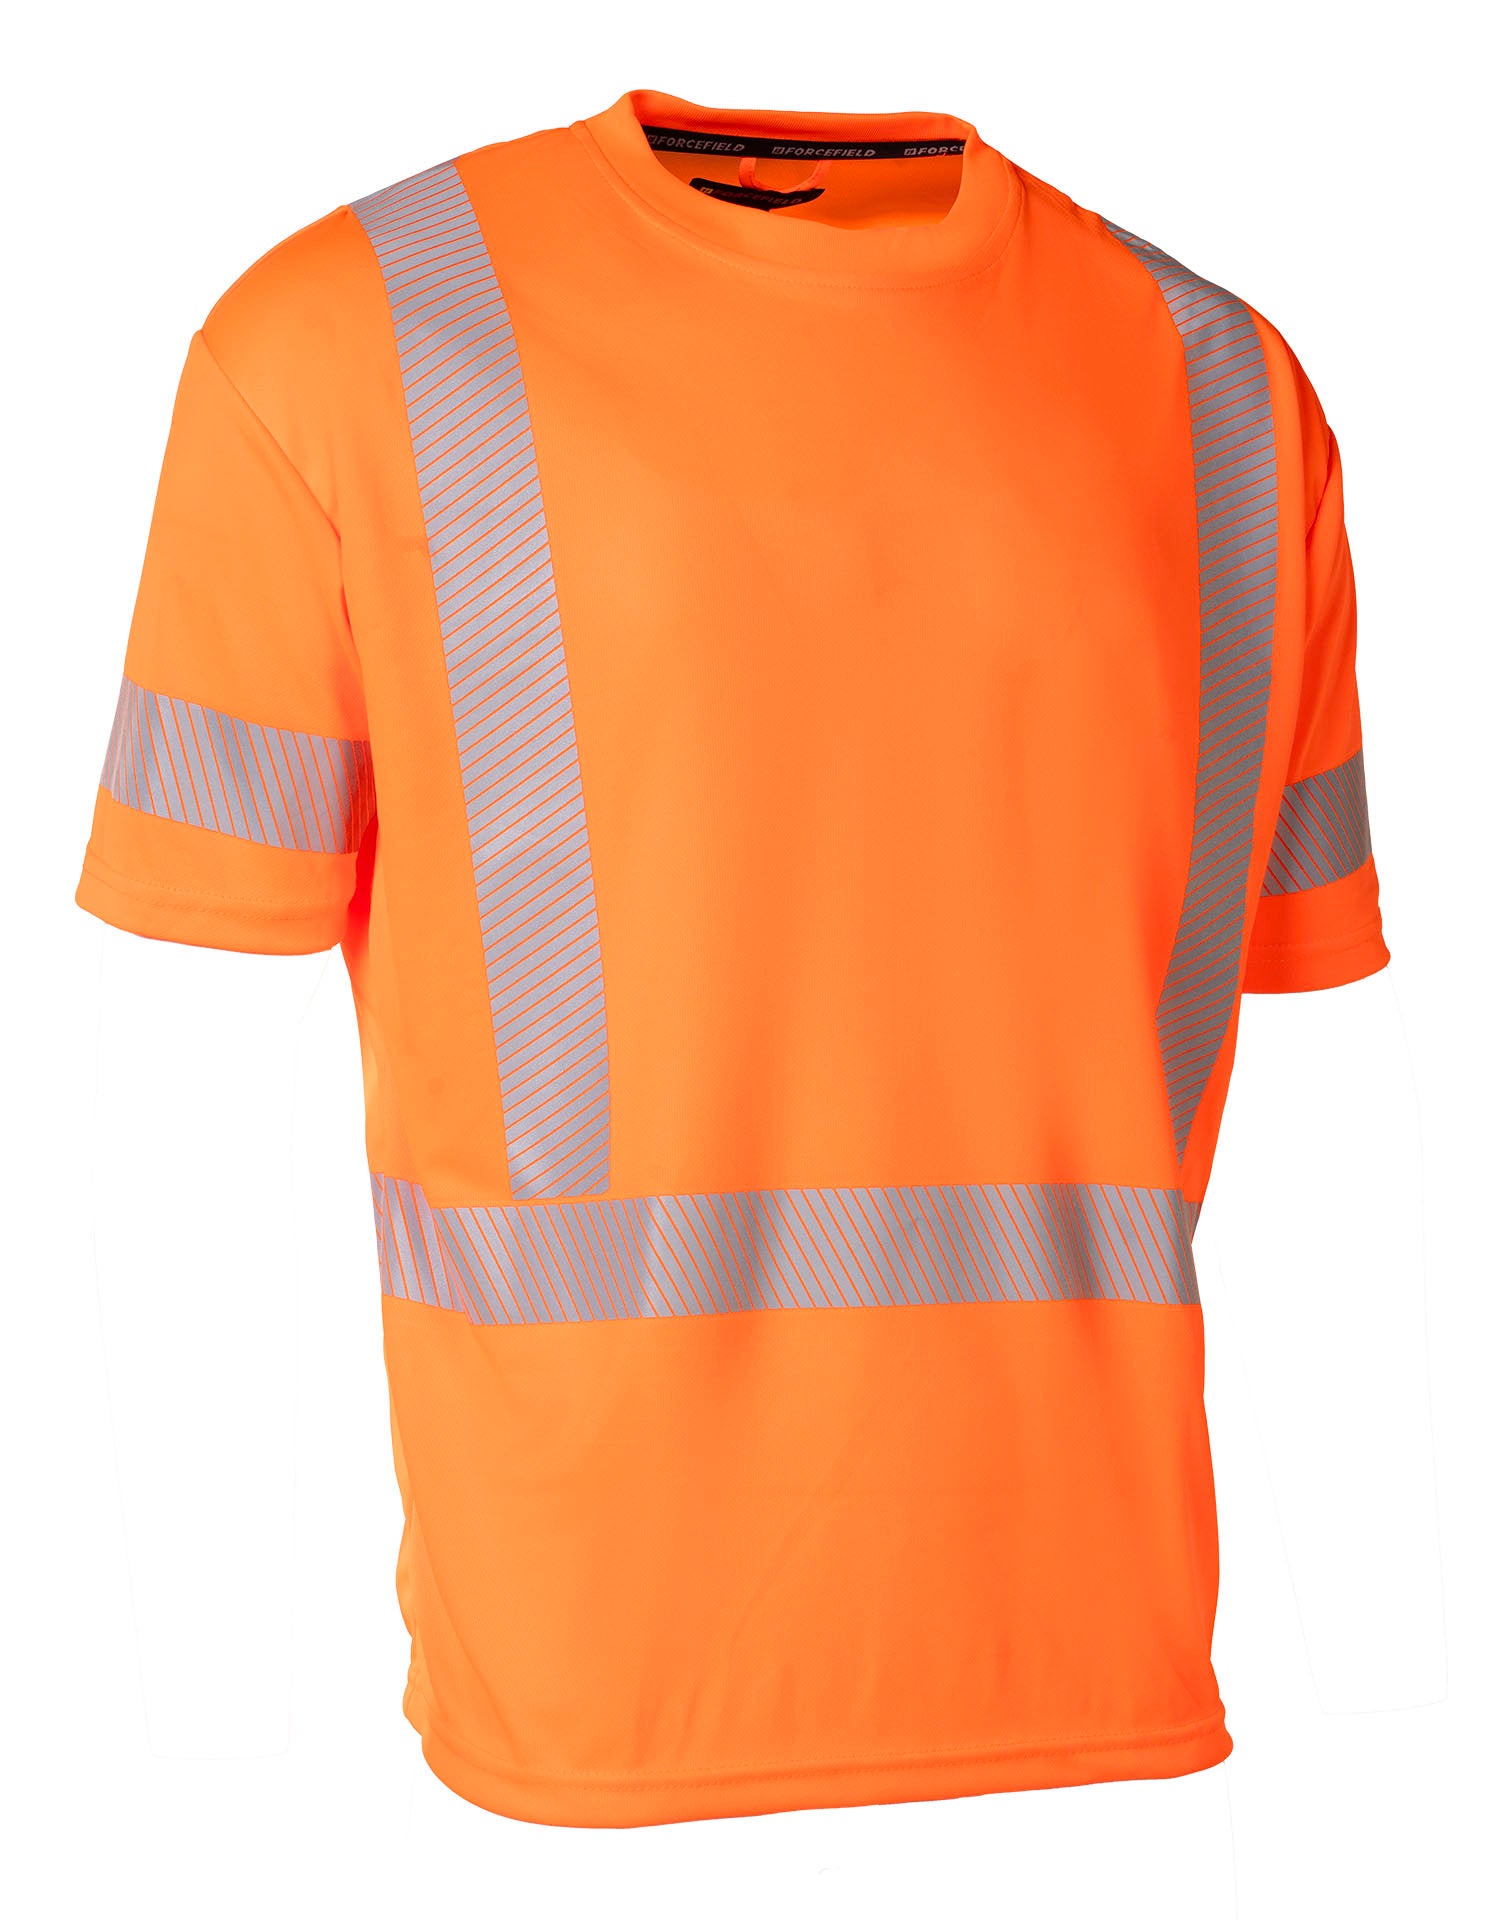 T-shirt technique ultradoux à manches courtes et col rond orange haute visibilité